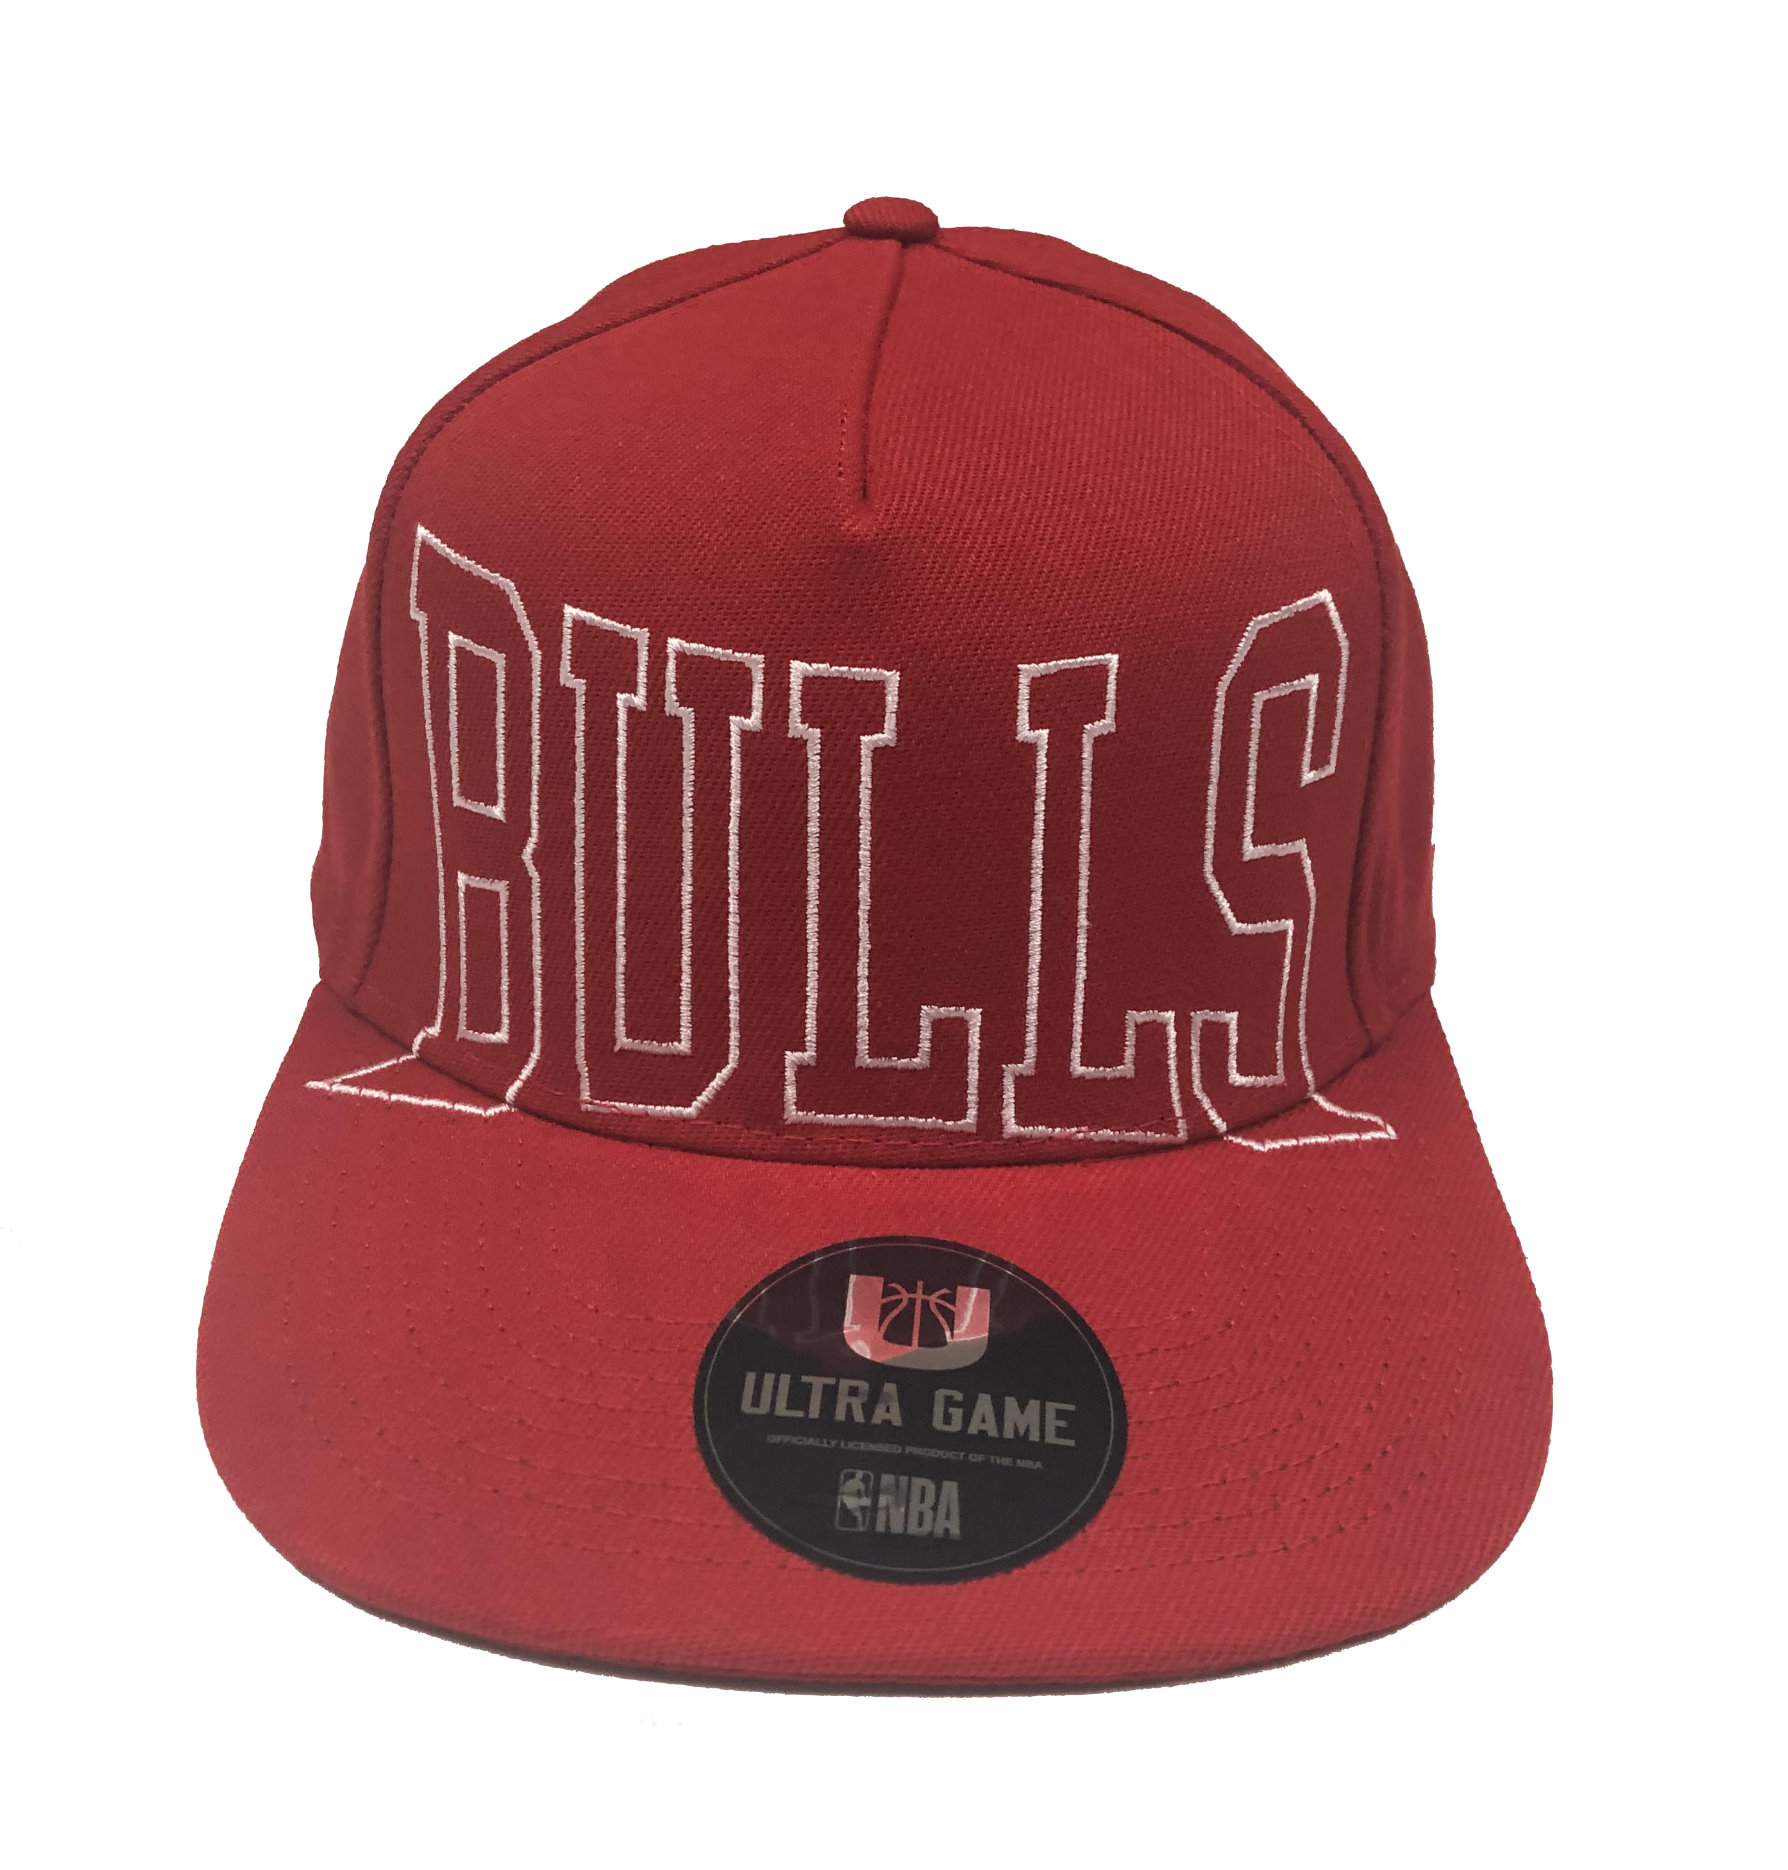 Bulls cap